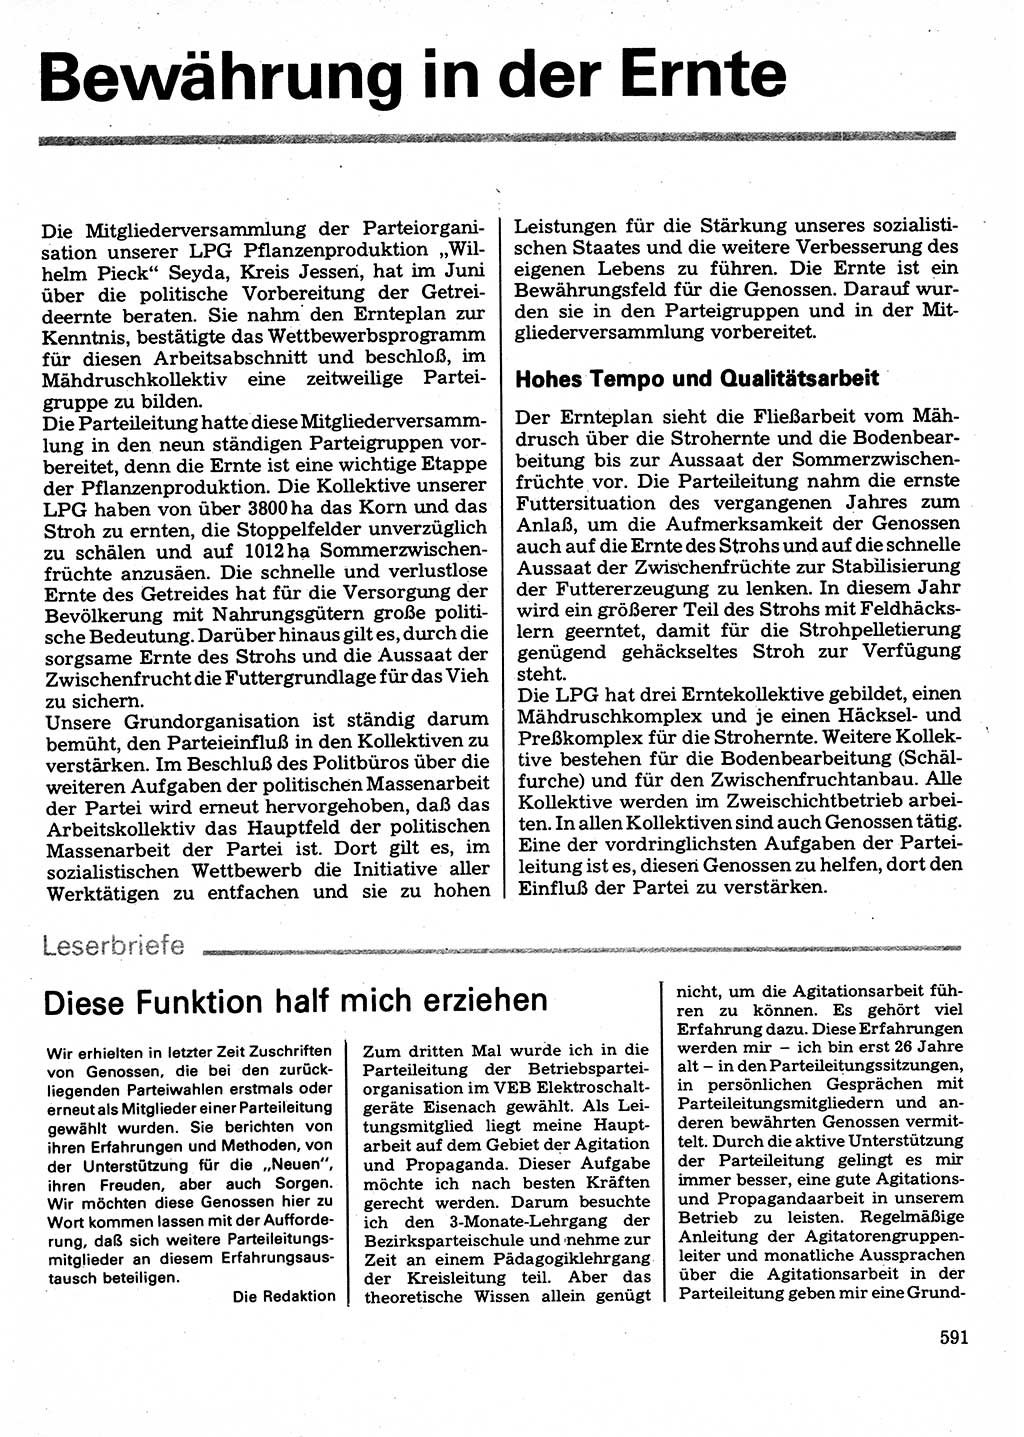 Neuer Weg (NW), Organ des Zentralkomitees (ZK) der SED (Sozialistische Einheitspartei Deutschlands) für Fragen des Parteilebens, 32. Jahrgang [Deutsche Demokratische Republik (DDR)] 1977, Seite 591 (NW ZK SED DDR 1977, S. 591)